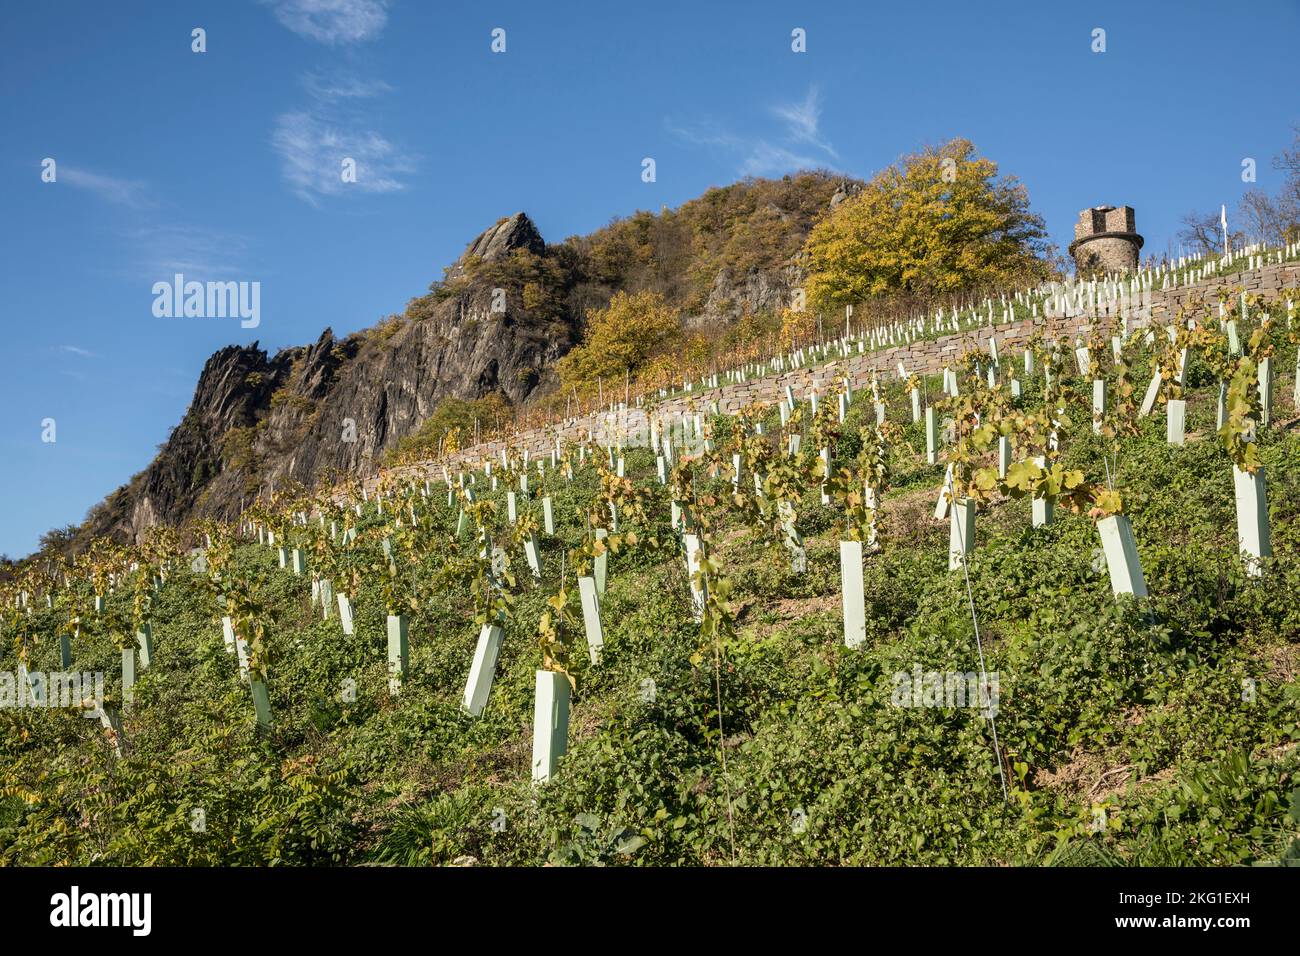 Weinbau in Rhoendorf am Rhein, im Hintergrund der Drachenfels-Hügel neer Königswinter, junge Weinrebe, rechts die Ulan-Bauwerke Stockfoto